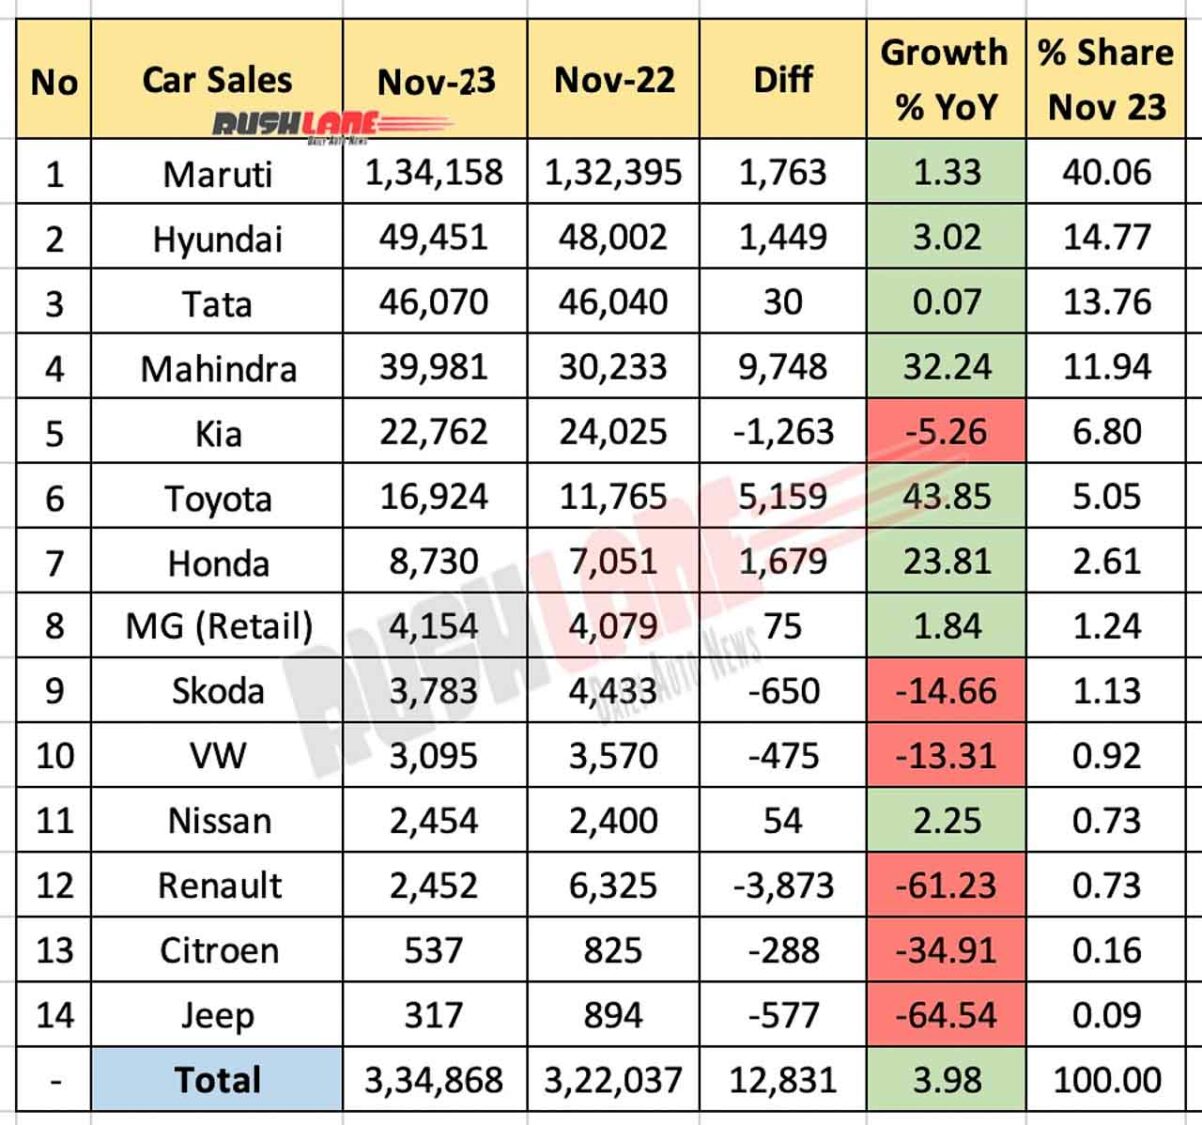 Car Sales Nov 2023 vs Nov 2022 - YoY comparison